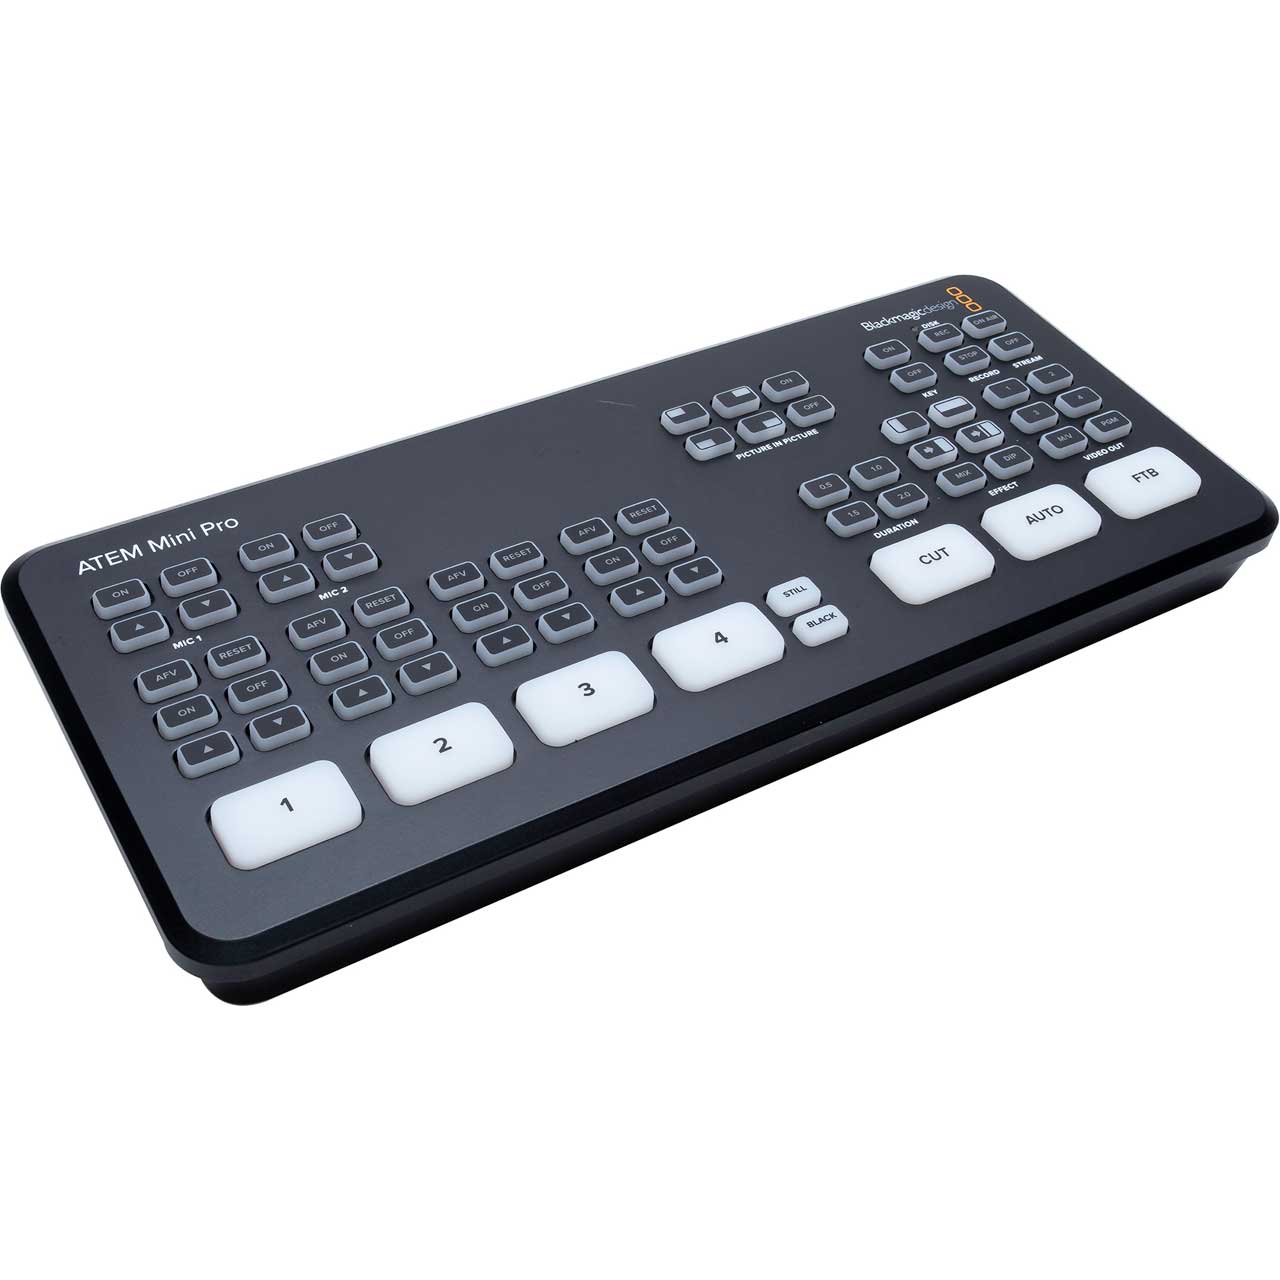 Livlig Den fremmede kedel Blackmagic Design ATEM Mini Pro HDMI Video Production Switcher with Live  Streaming - Bstock (Refurbished)